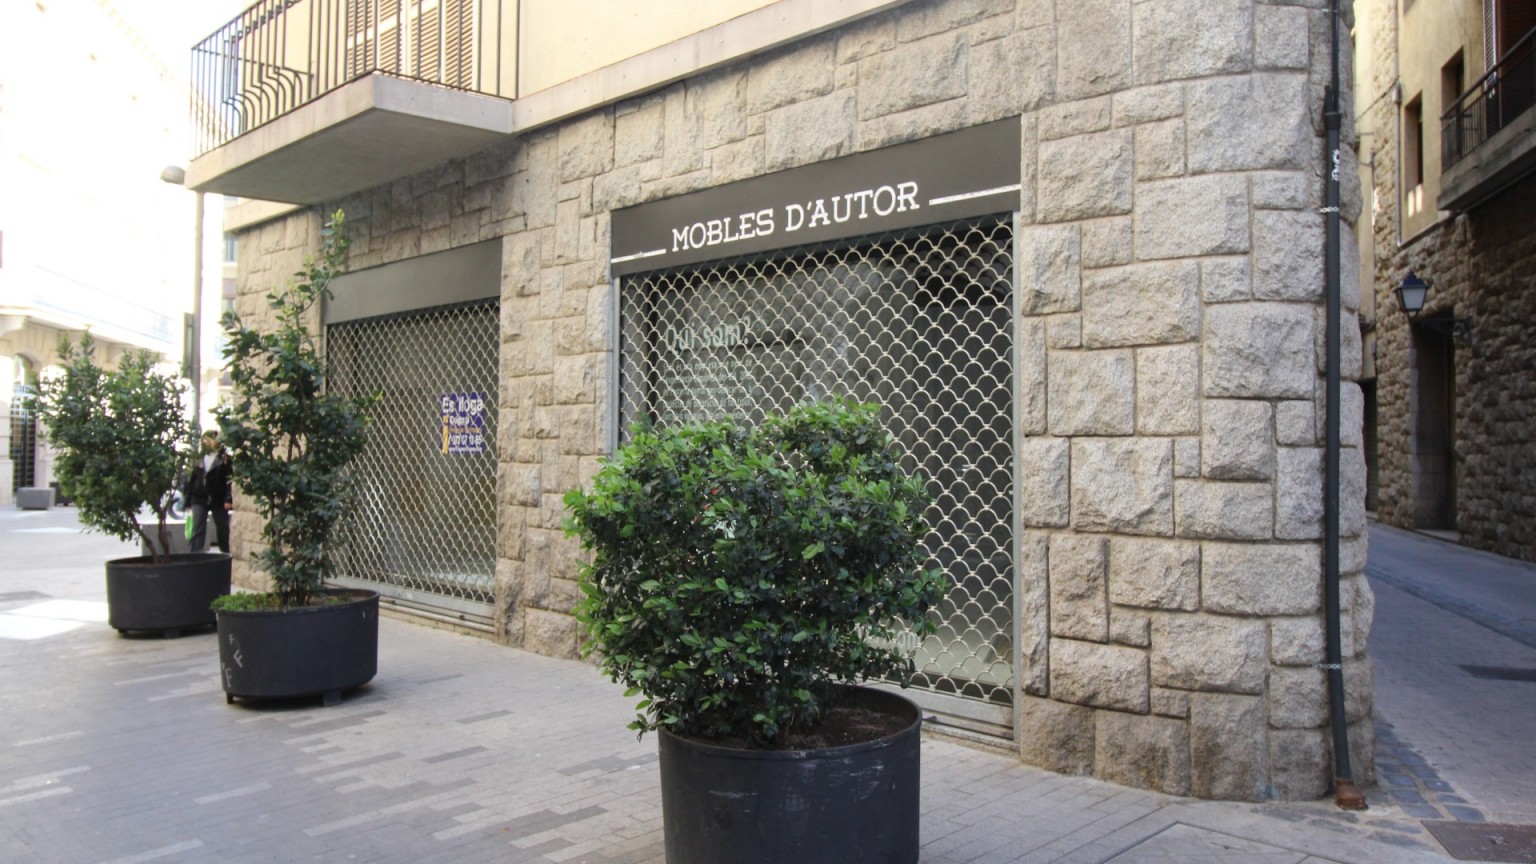 Local à louer, au centre de Figueres. 